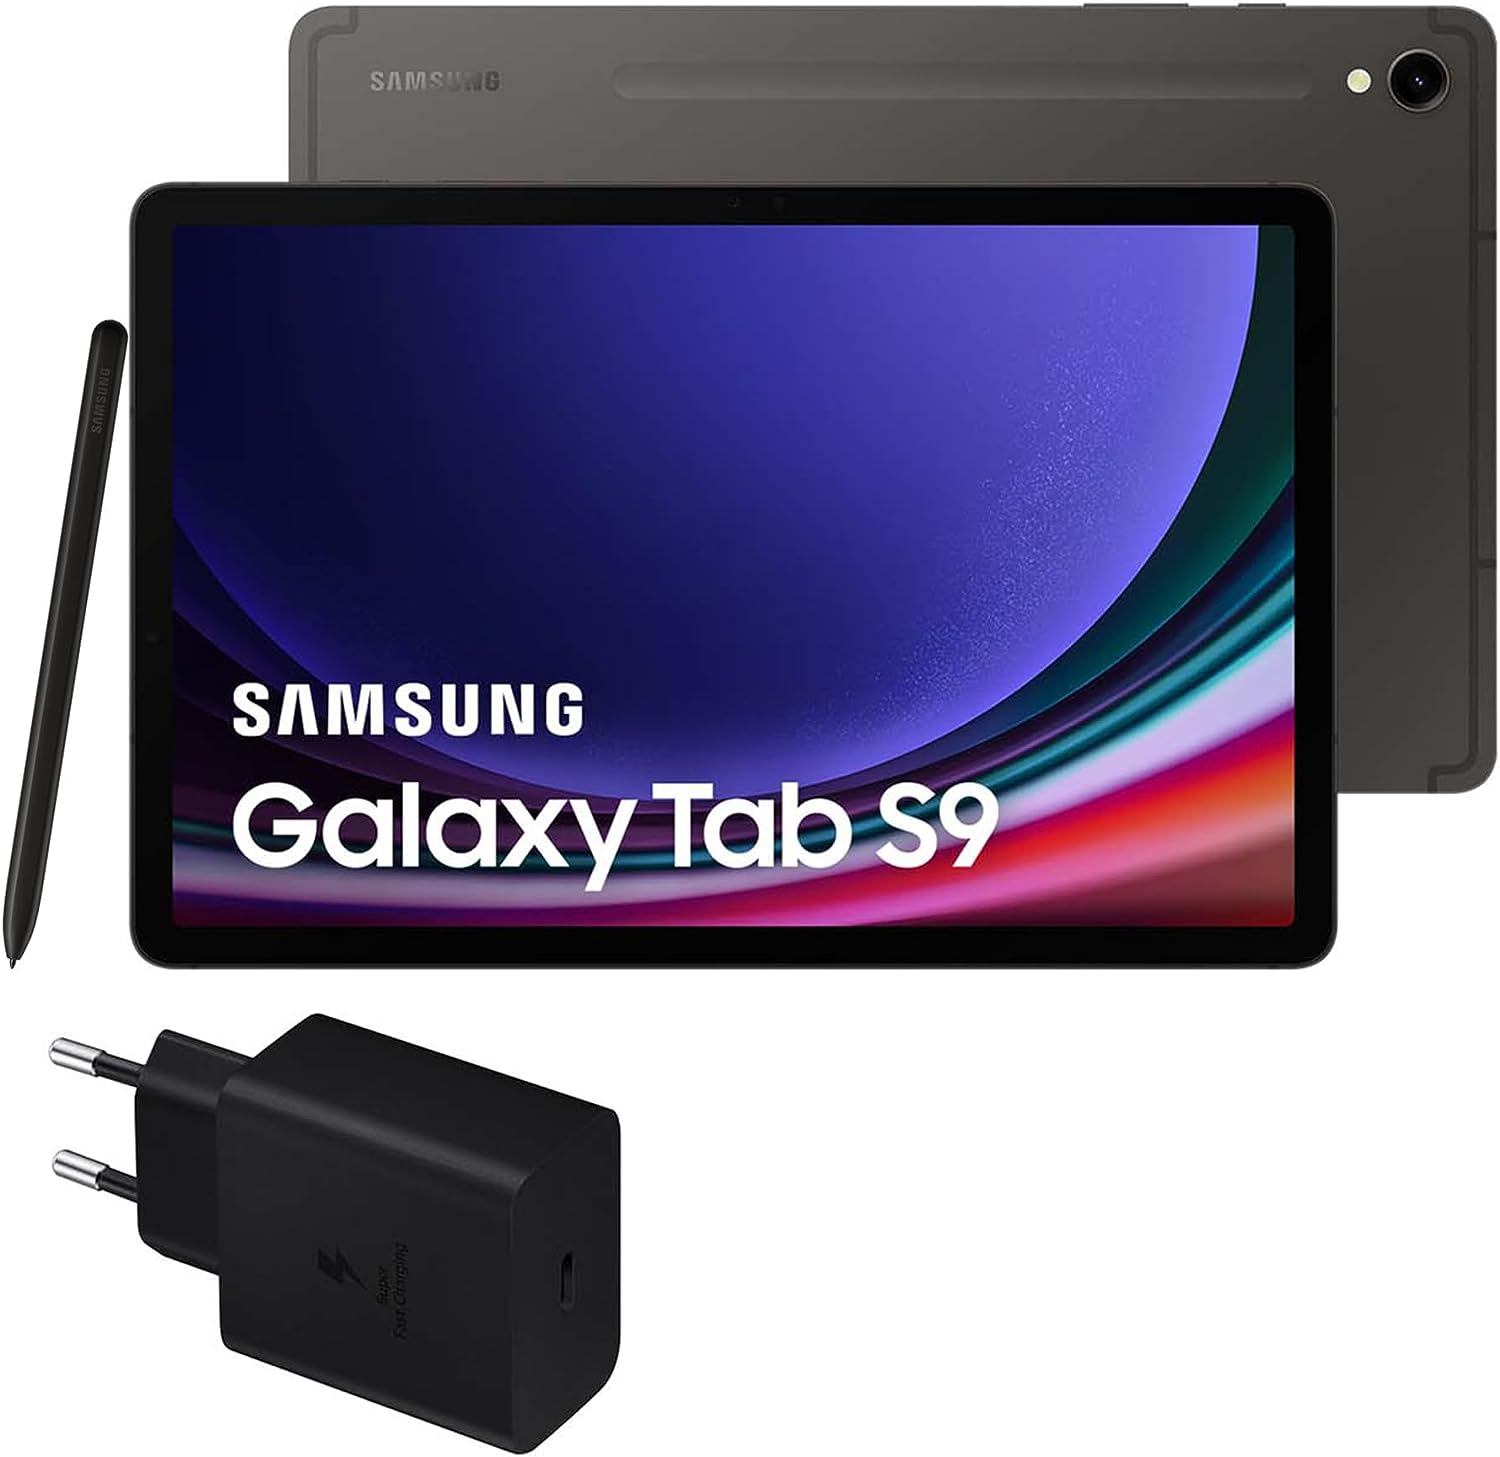 Samsung Galaxy Tab S9 vs S8